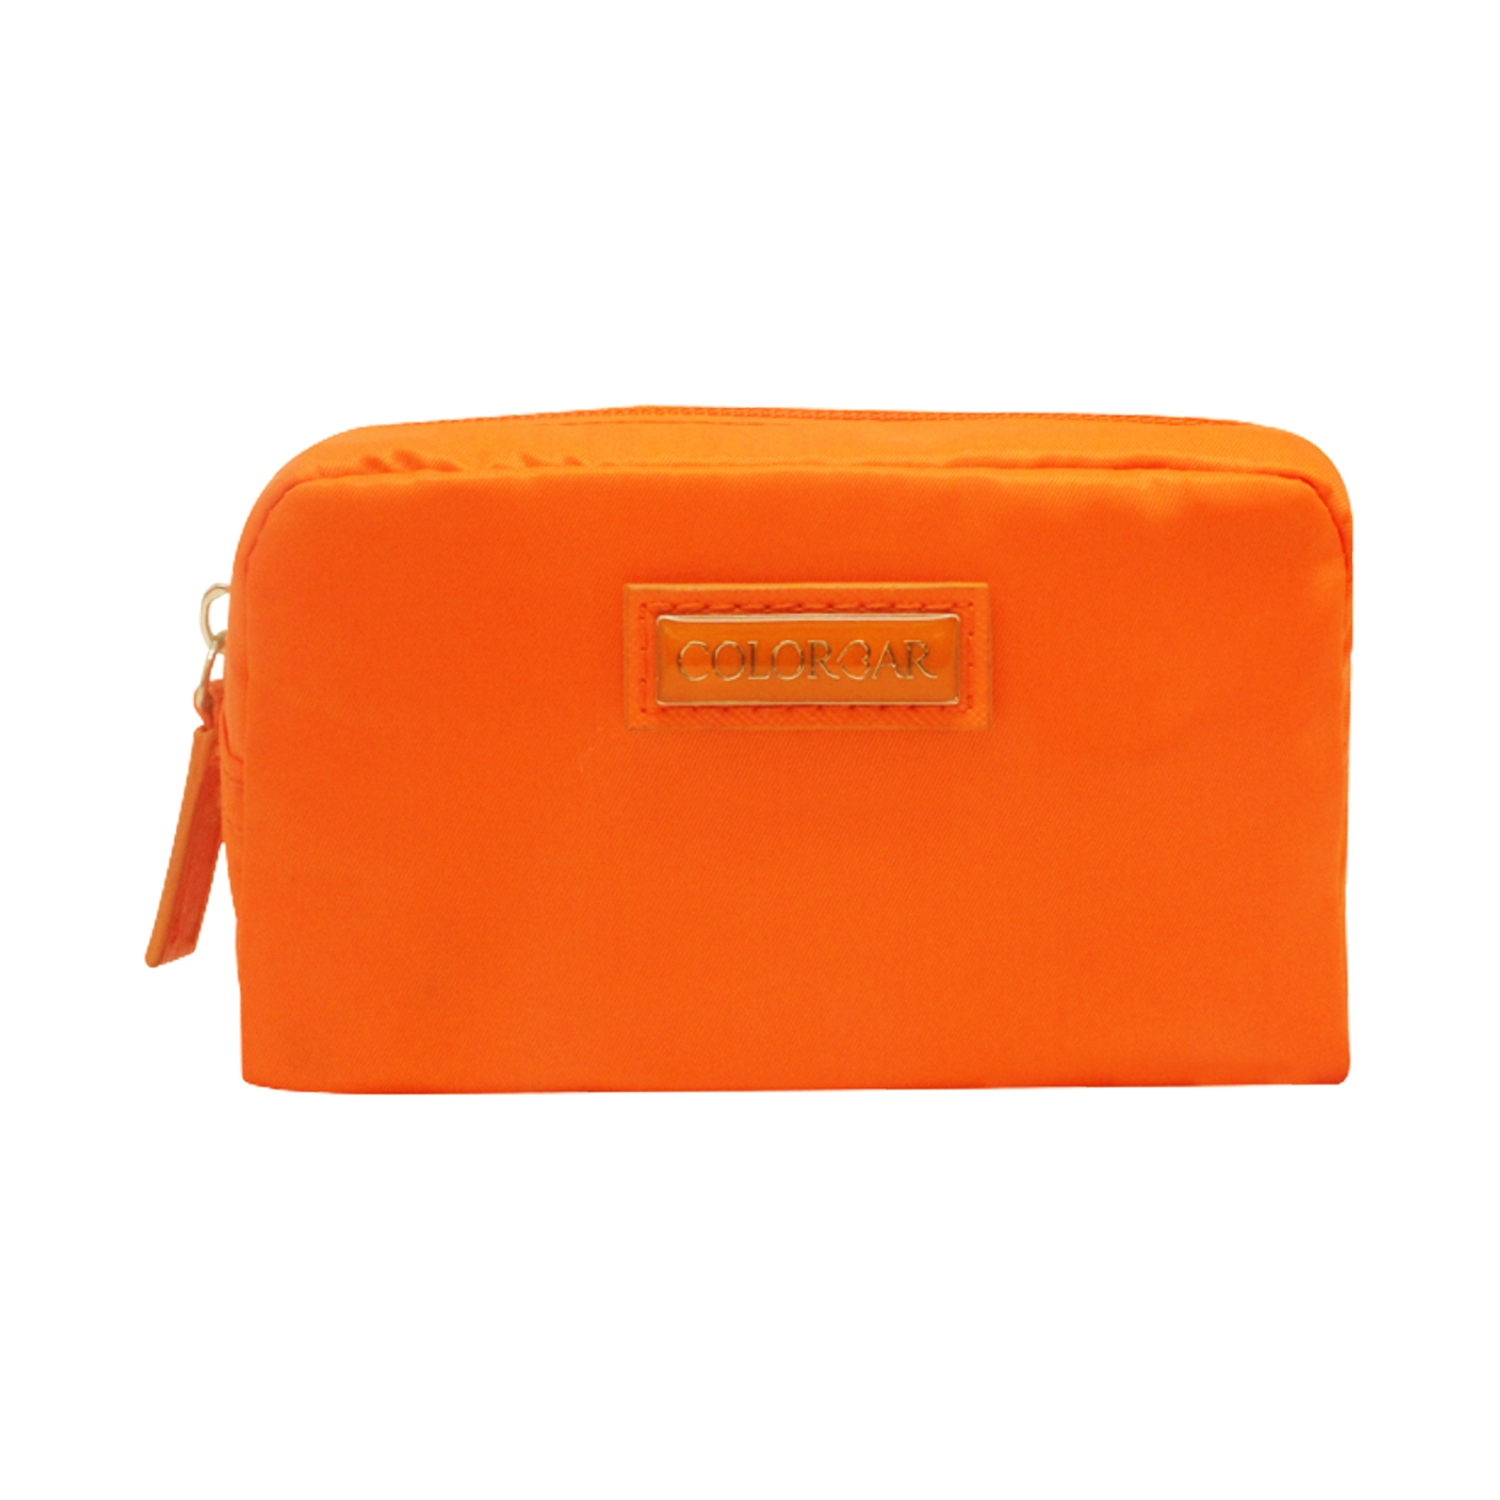 Colorbar Mini Pouch New - Orange